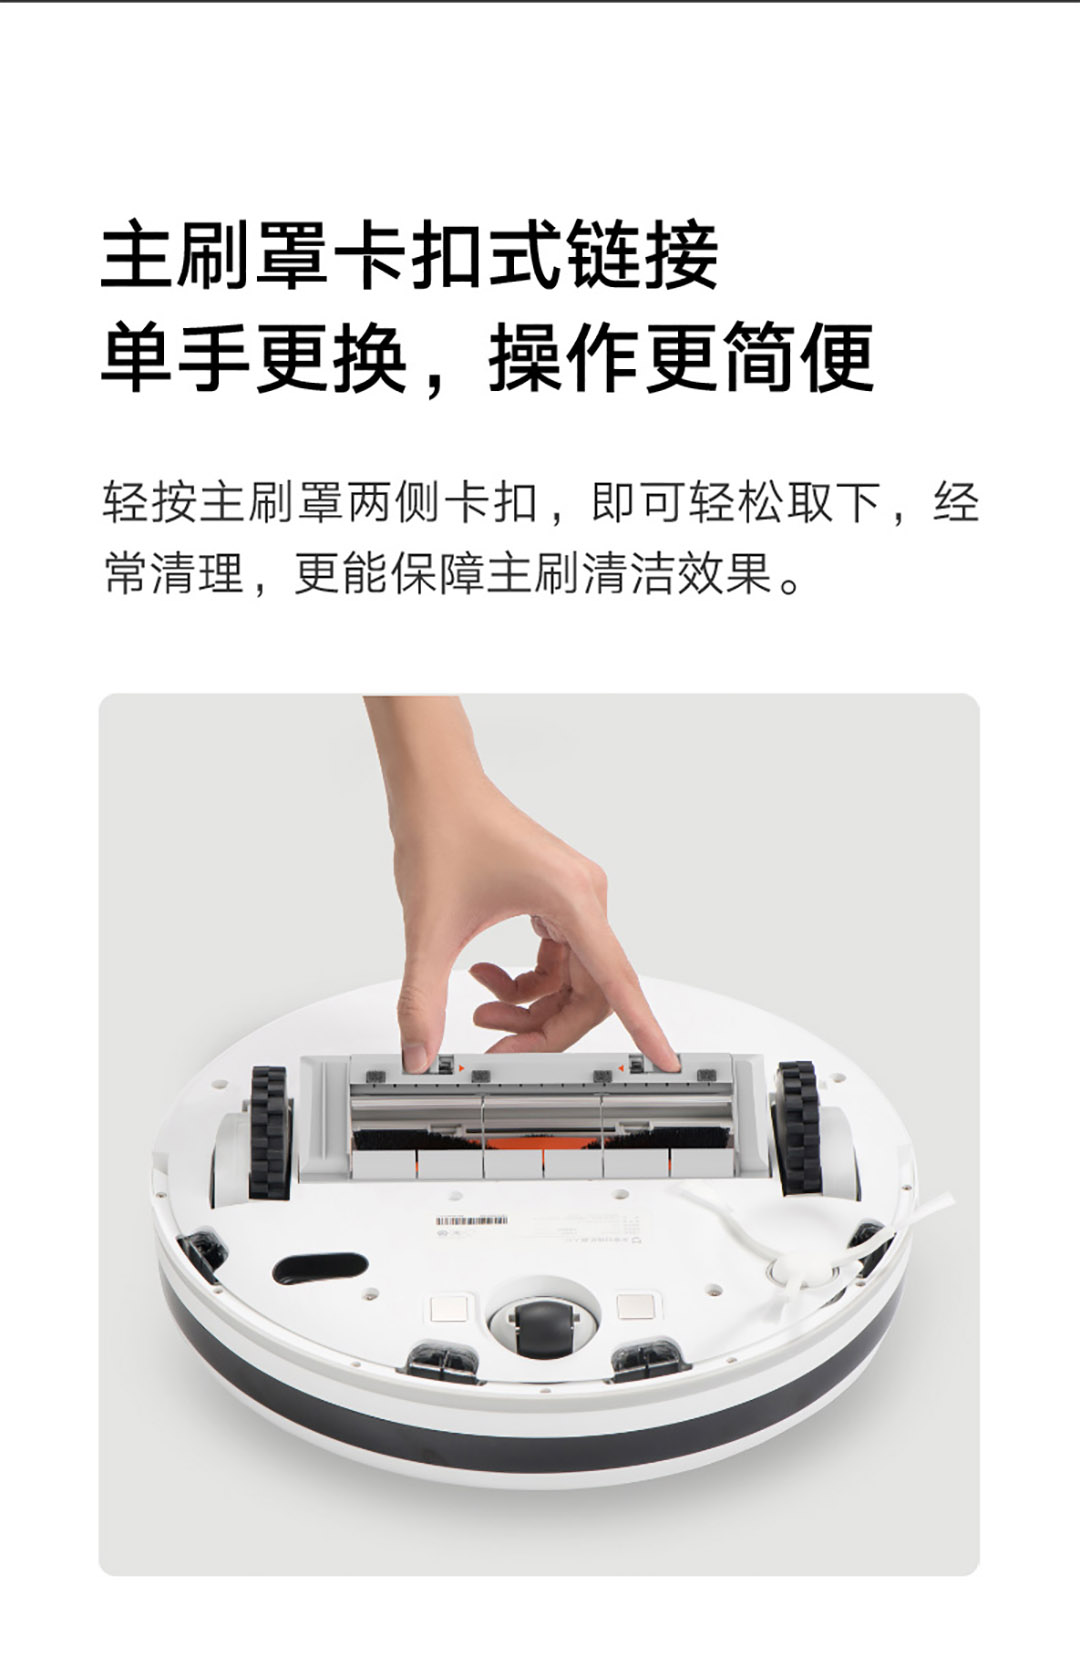 product_奇妙_米家扫拖机器人1C1T-配件